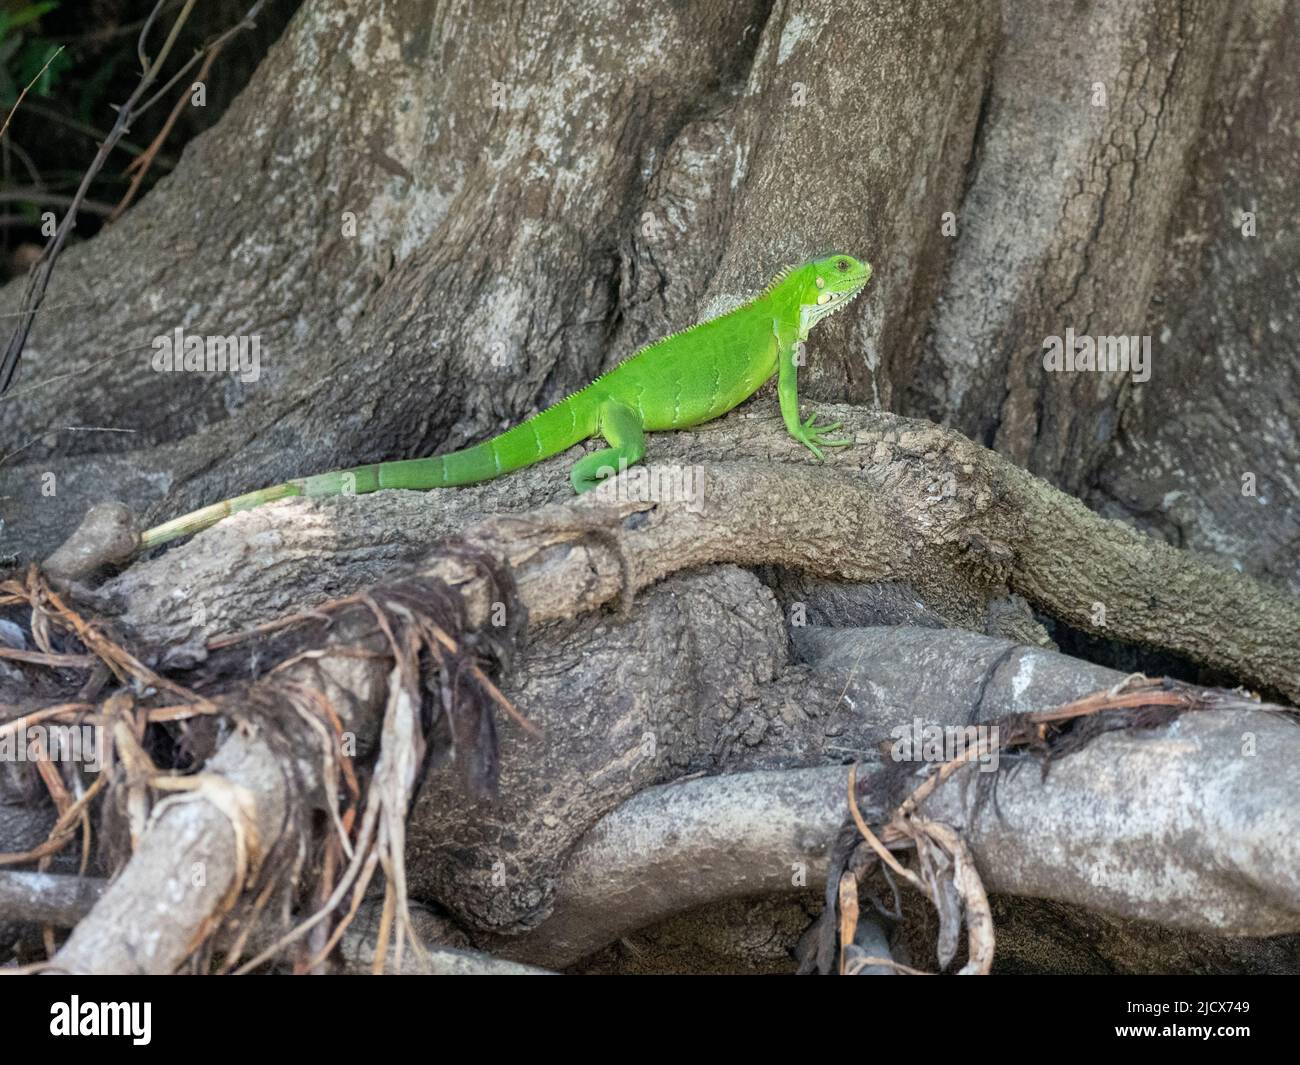 Iguana vert adulte (iguana iguana), se prélassant sur les rives du Rio Tres Irmao, Mato Grosso, Pantanal, Brésil, Amérique du Sud Banque D'Images